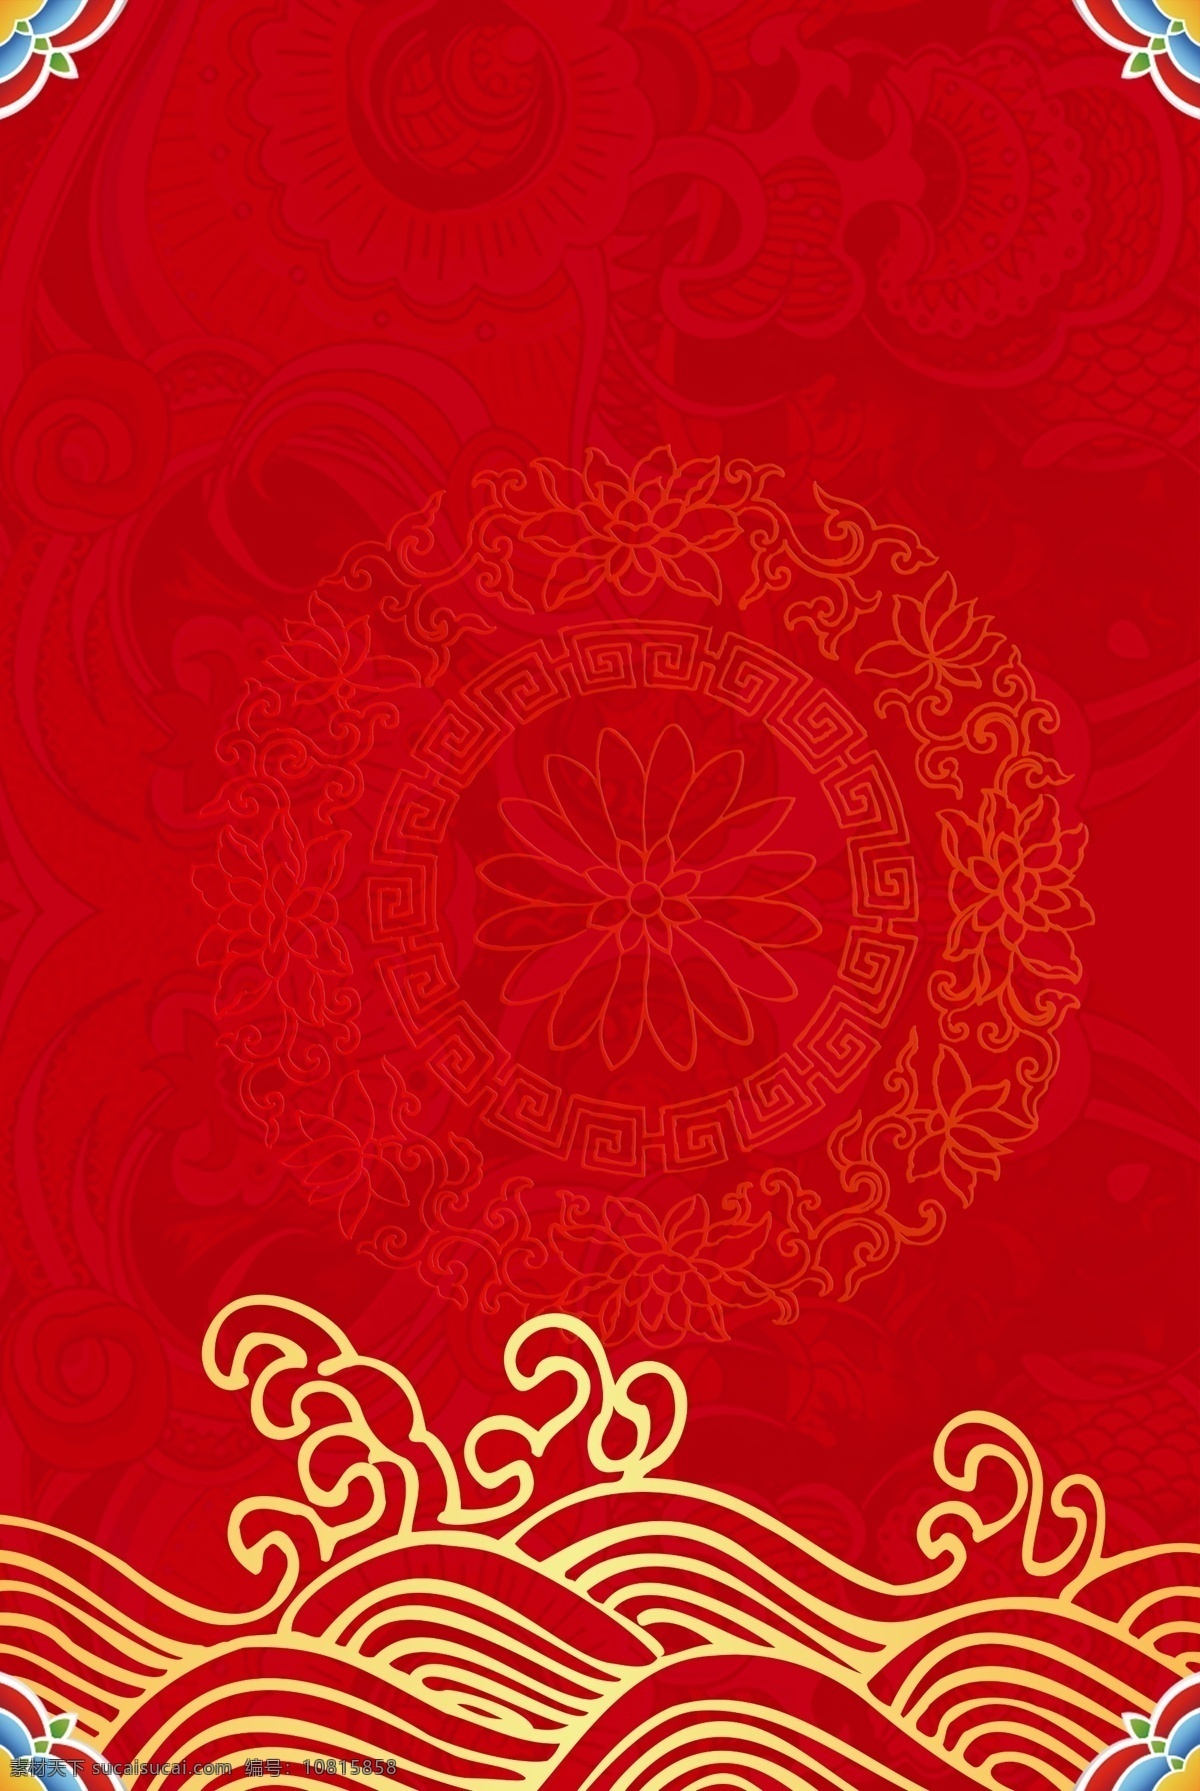 中国 风 红色 纹理 背景 新式中国风 中国风 高端 简约 商务 复古风 大气 质感 开心